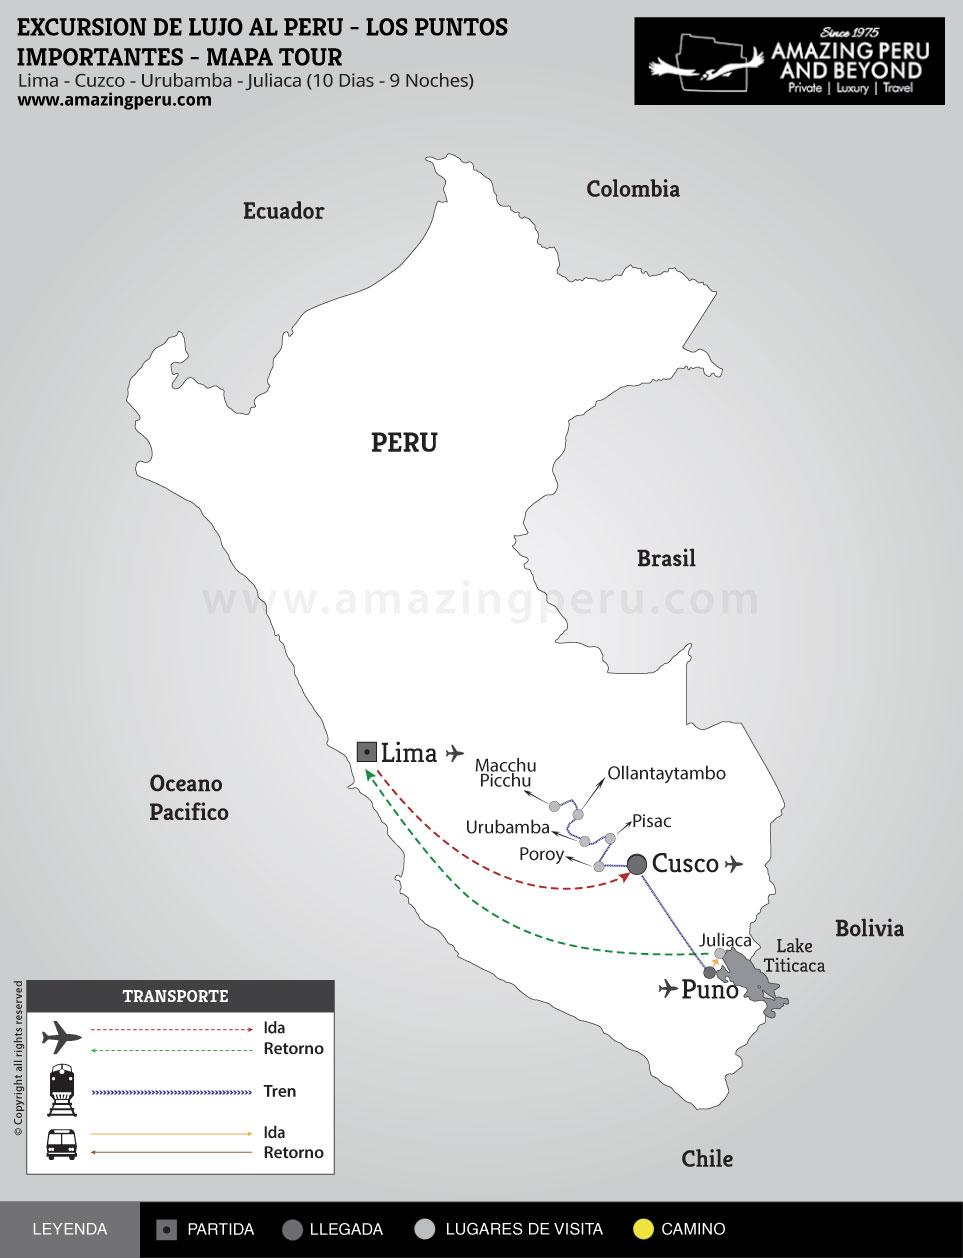 Excursion de Lujo al Perú - Lo puntos mas importantes - Opción 1